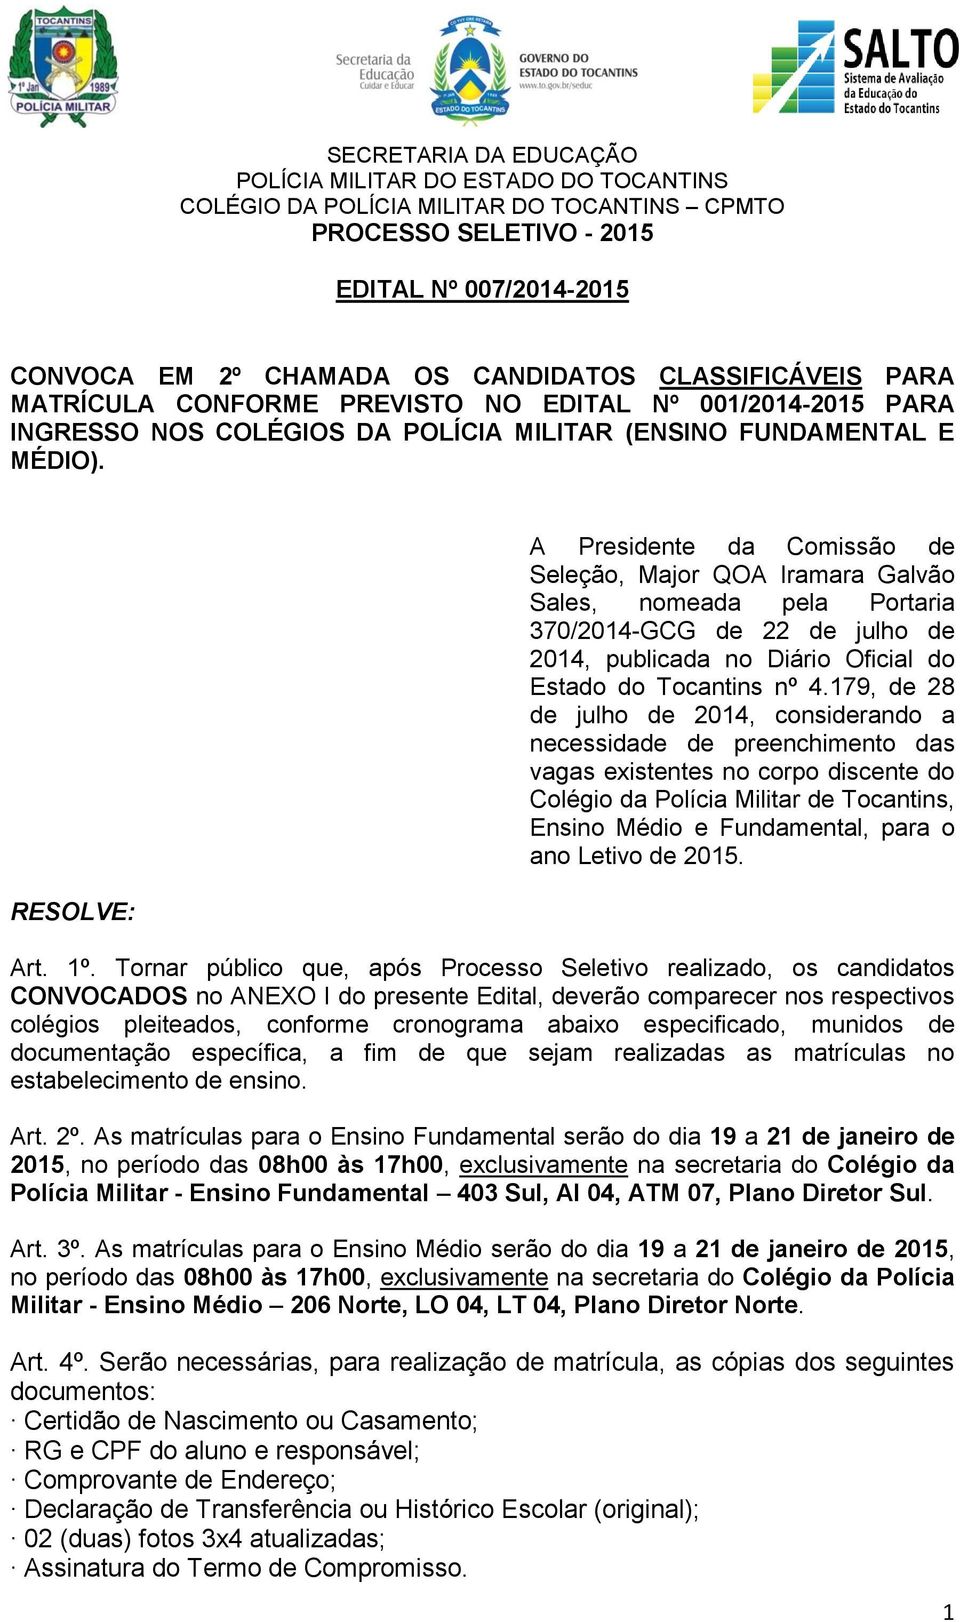 RESOLVE: A Presidente da Comissão de Seleção, Major QOA Iramara Galvão Sales, nomeada pela Portaria 370/2014-GCG de 22 de julho de 2014, publicada no Diário Oficial do Estado do Tocantins nº 4.